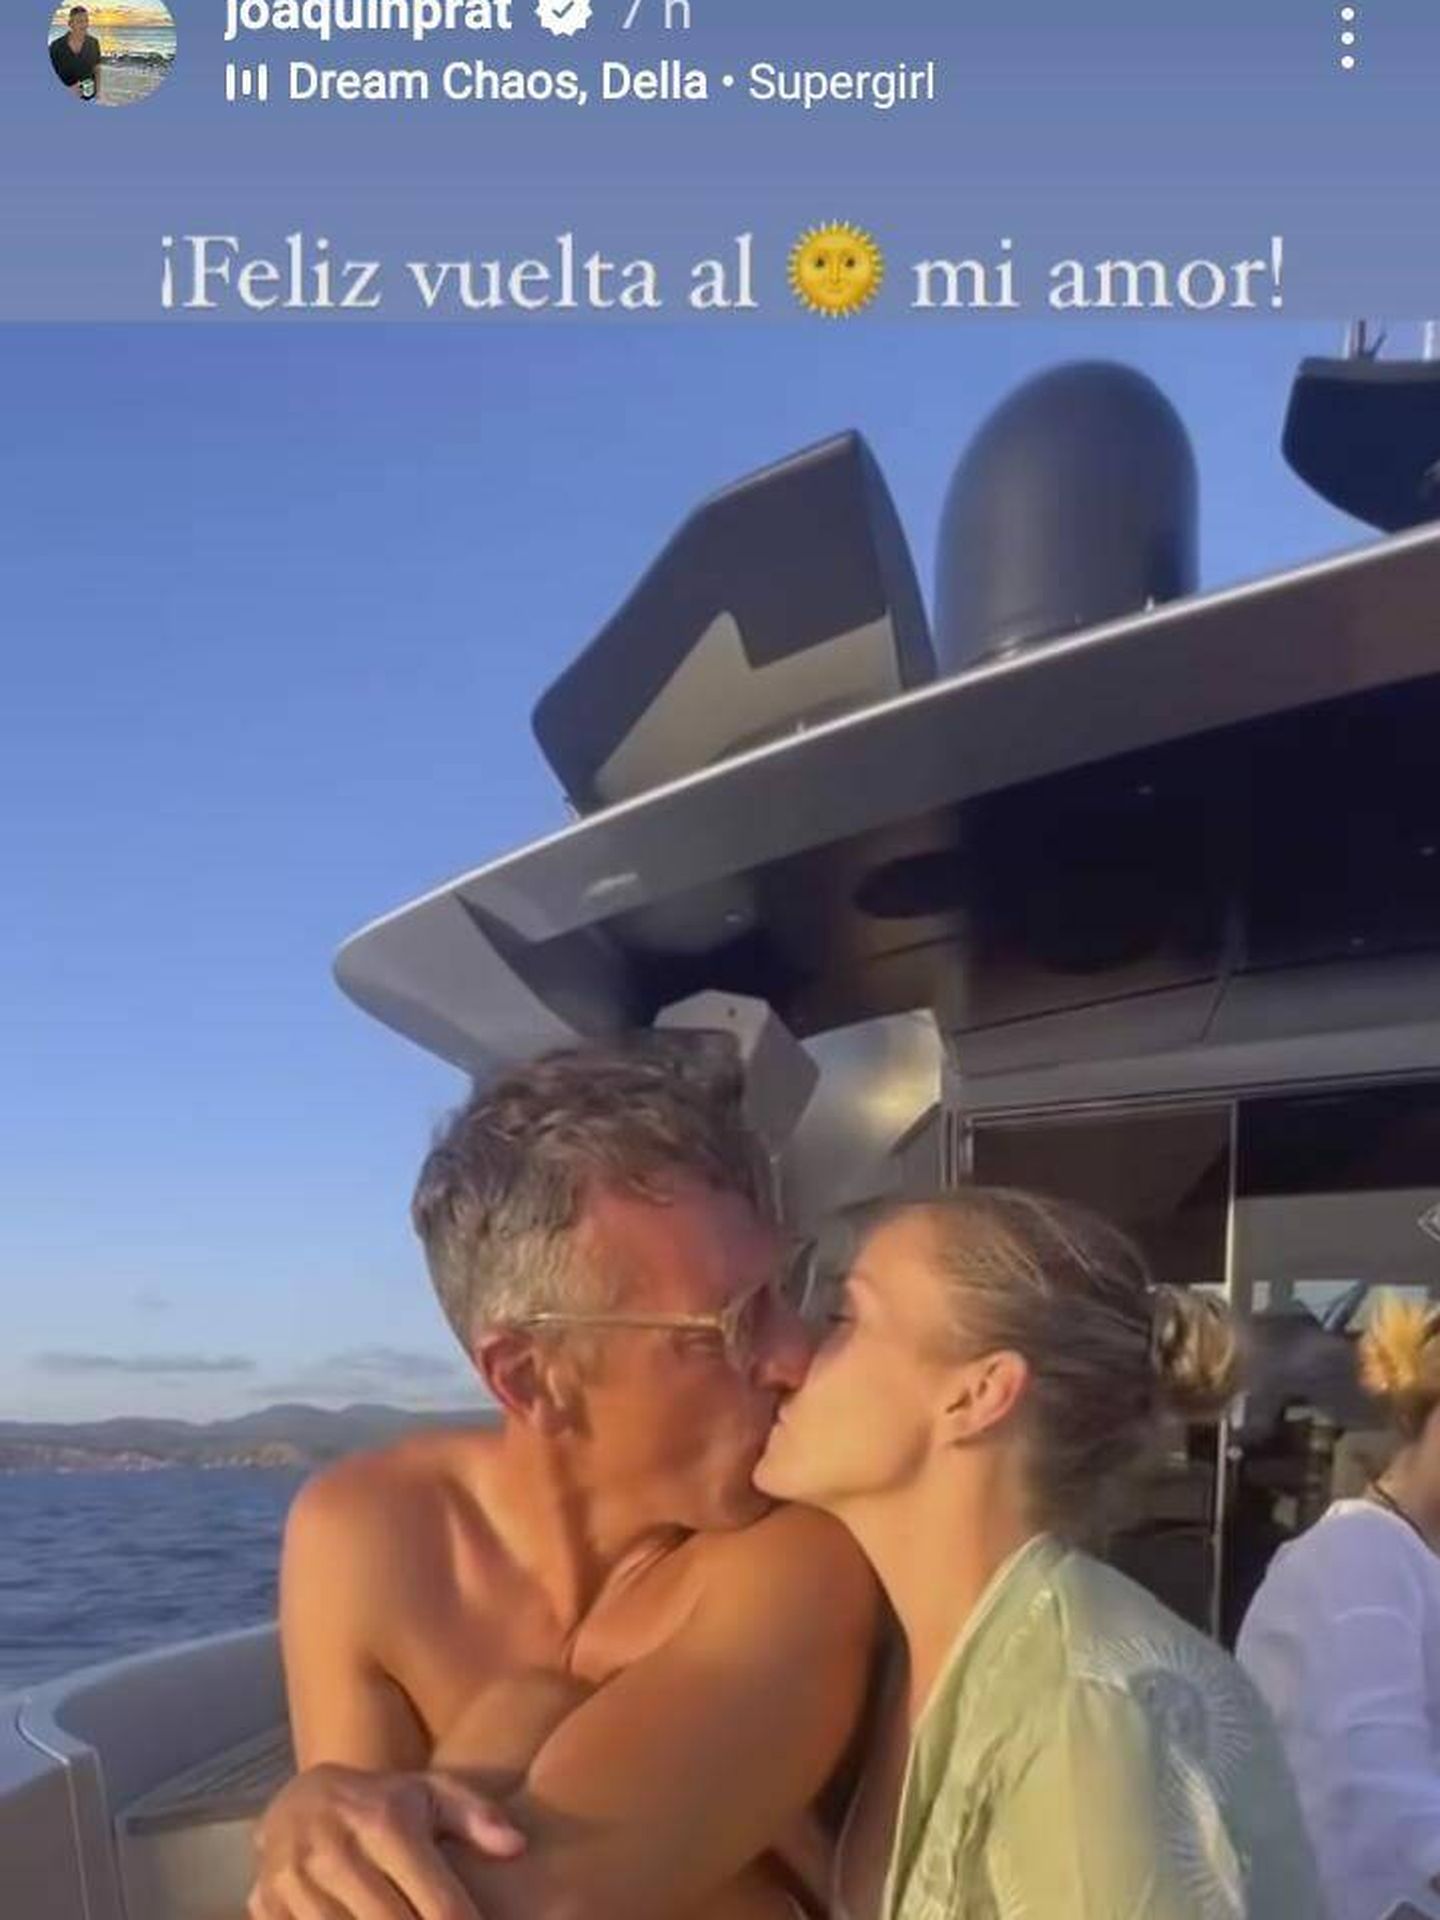 Captura del vídeo con el que Joaquín Prat le ha felicitado el cumpleaños a su chica, Alexia Pla. (Instagram/@joaquinprat)